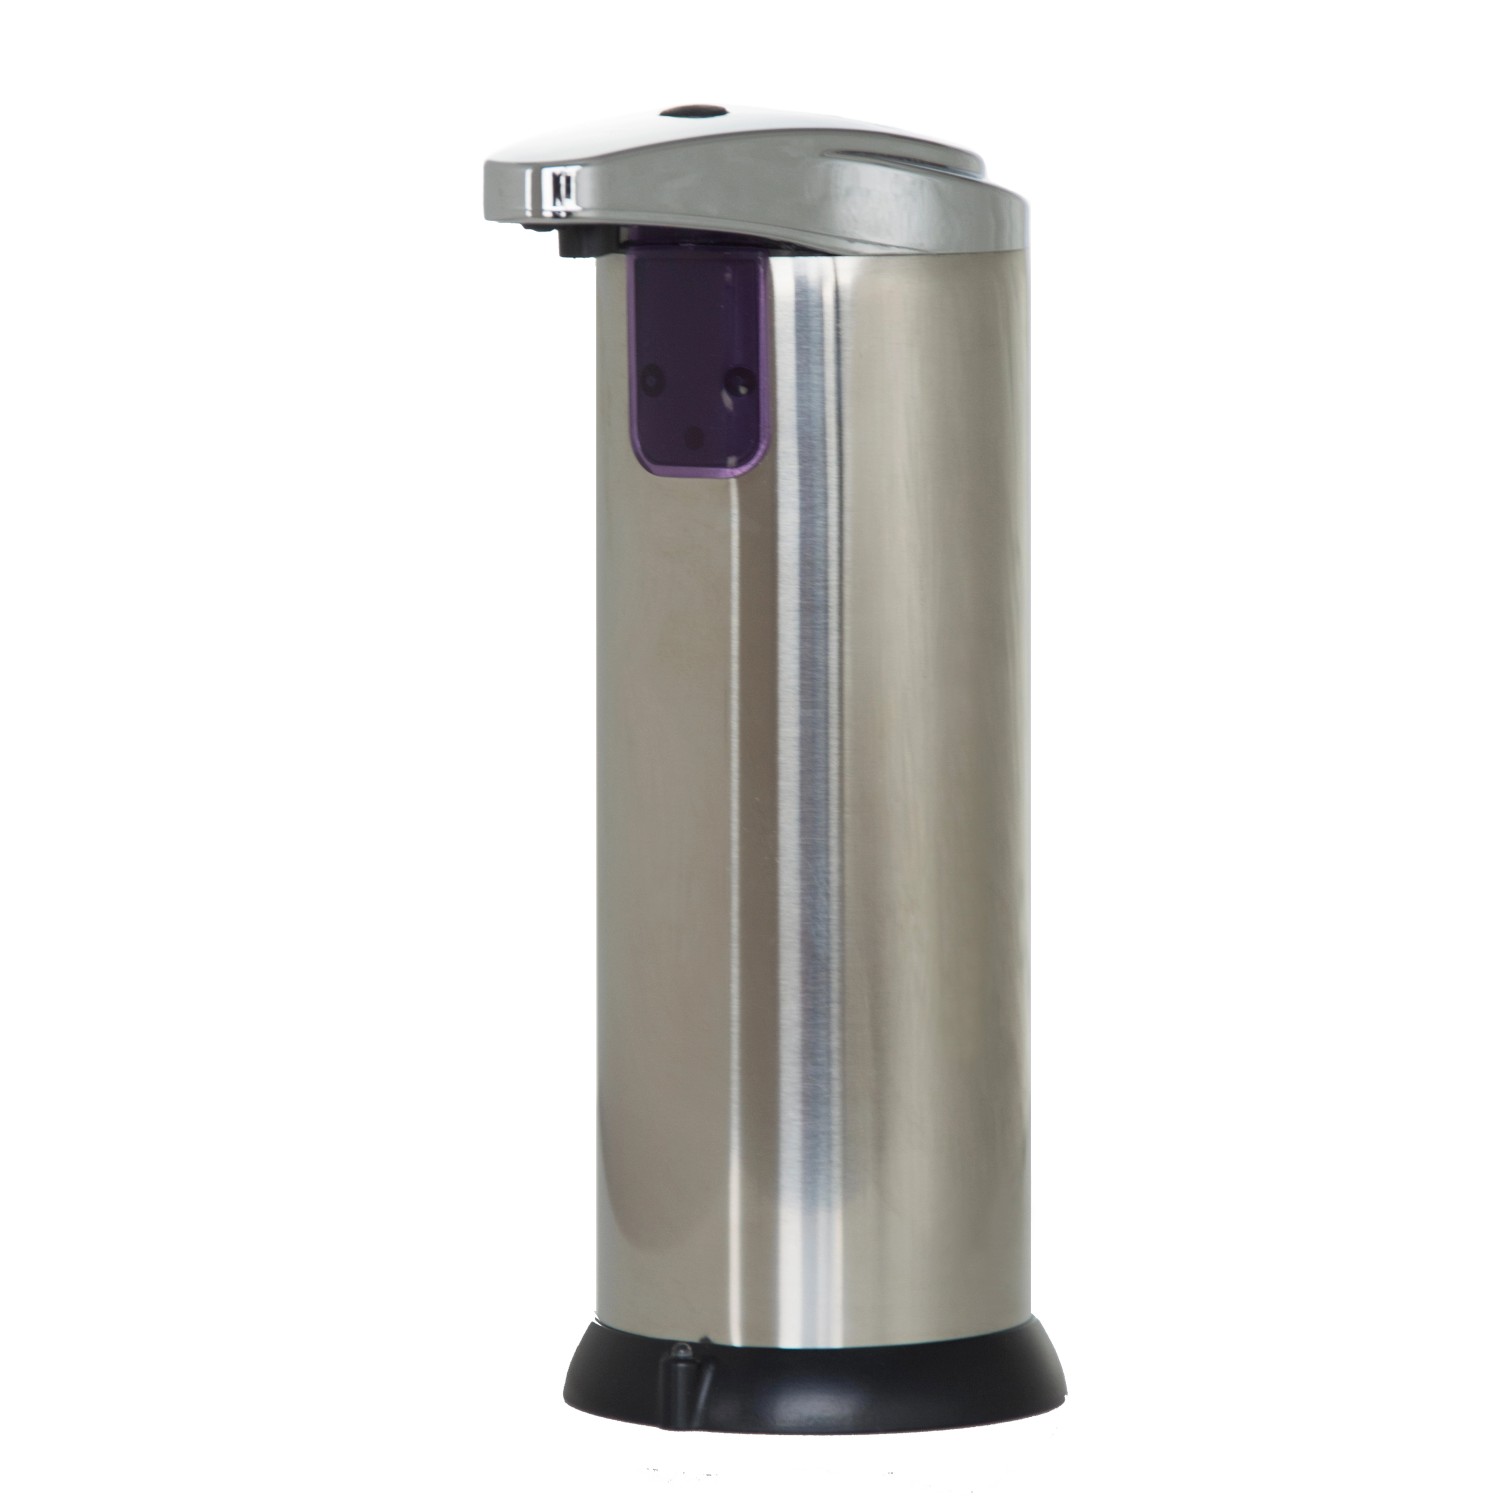 FormuClear Seifenspender Hands Free Soap Dispenser mit Infrarotsensor 220 ml von Starlyf